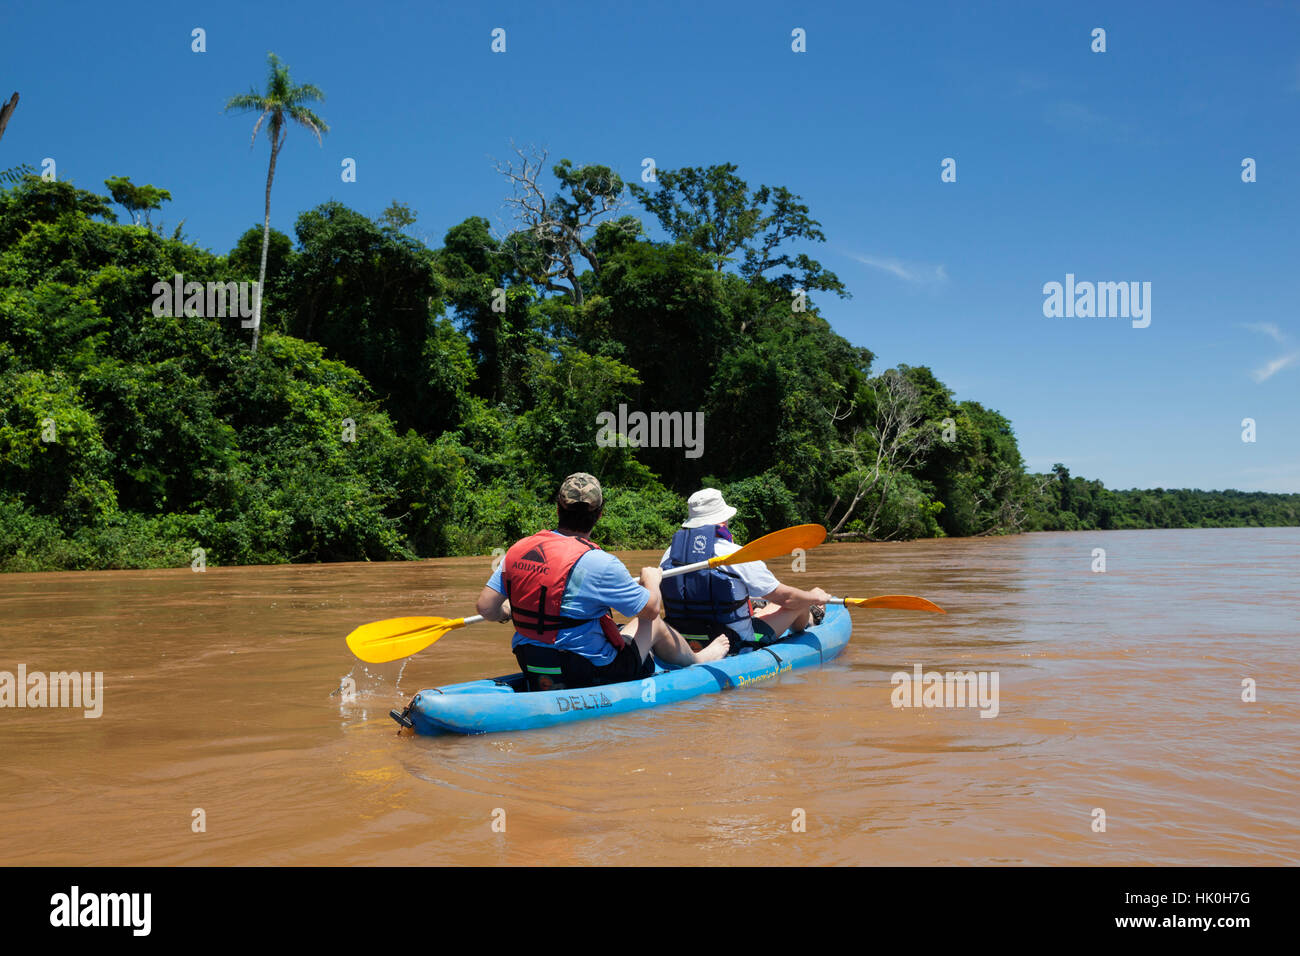 Kayak sur la rivière Iguazu passé sous-tropical rainforest, près de l'Andresito, Parc National de l'Iguazu, province de Misiones, Argentine Banque D'Images